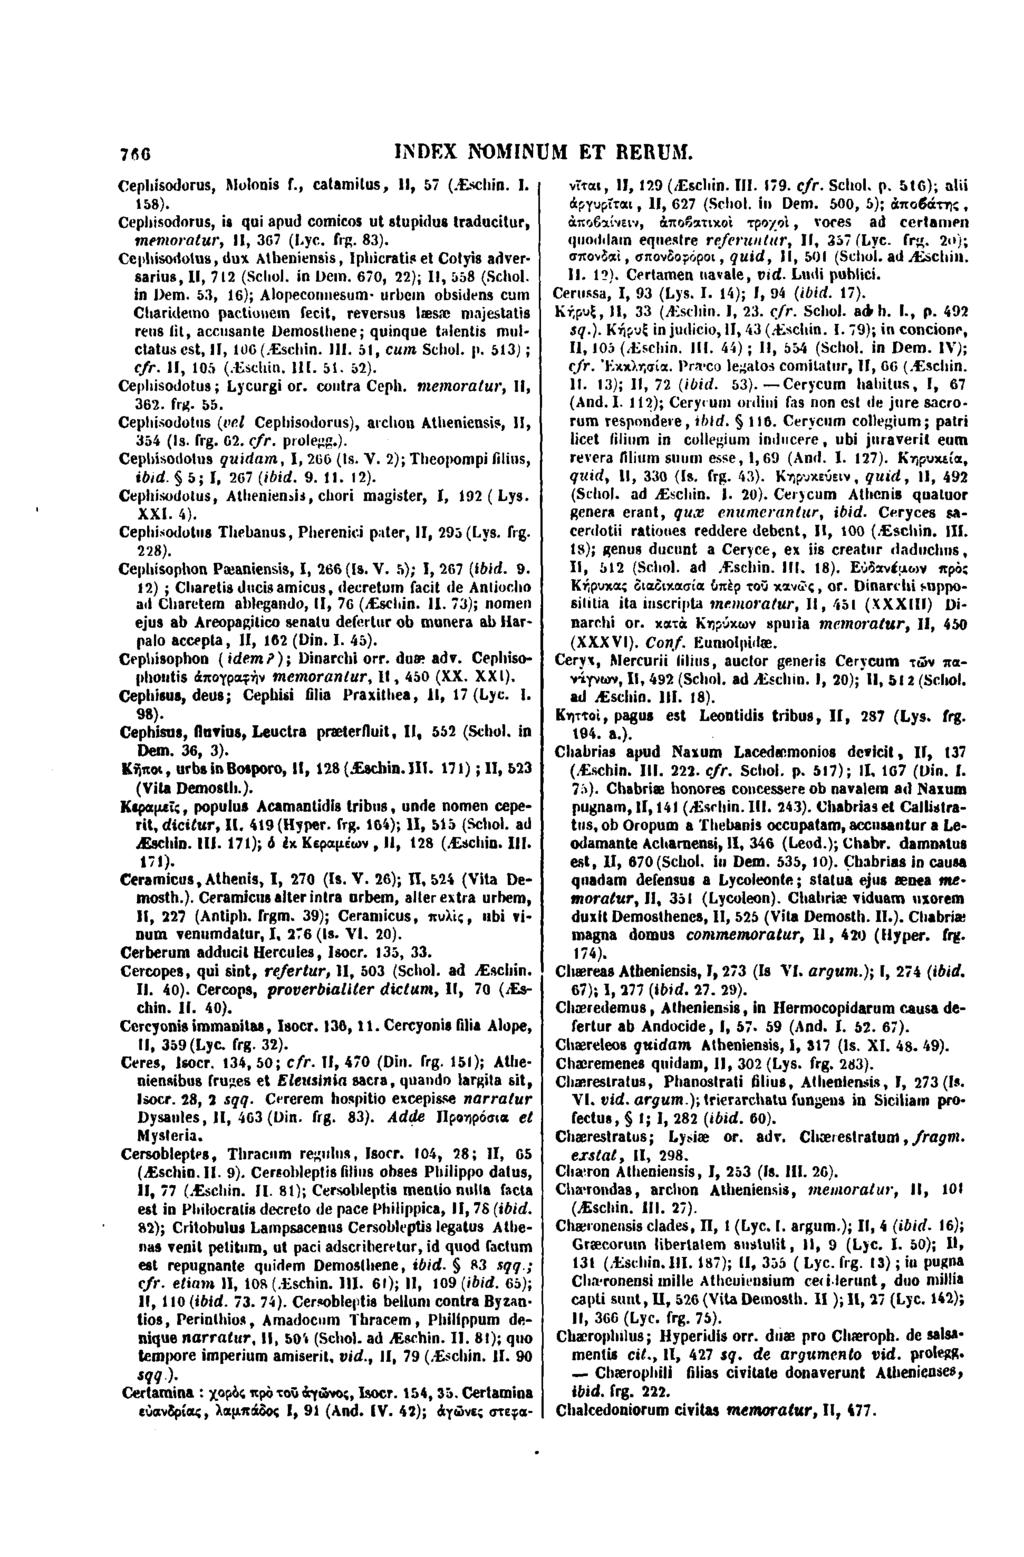 766 Cepliisodorus, Molonis 1., catamilus, Il, 57 (Æscliin. I. 158). Cepliisodorus, in qui apud comicos ut stupidus lraducitur. memoratur, Il, 367 (Lyc. frg. 83).